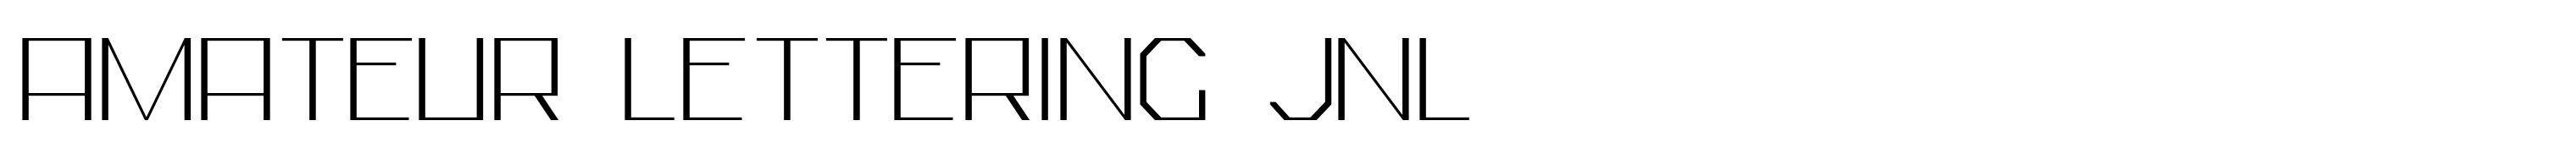 Amateur Lettering JNL